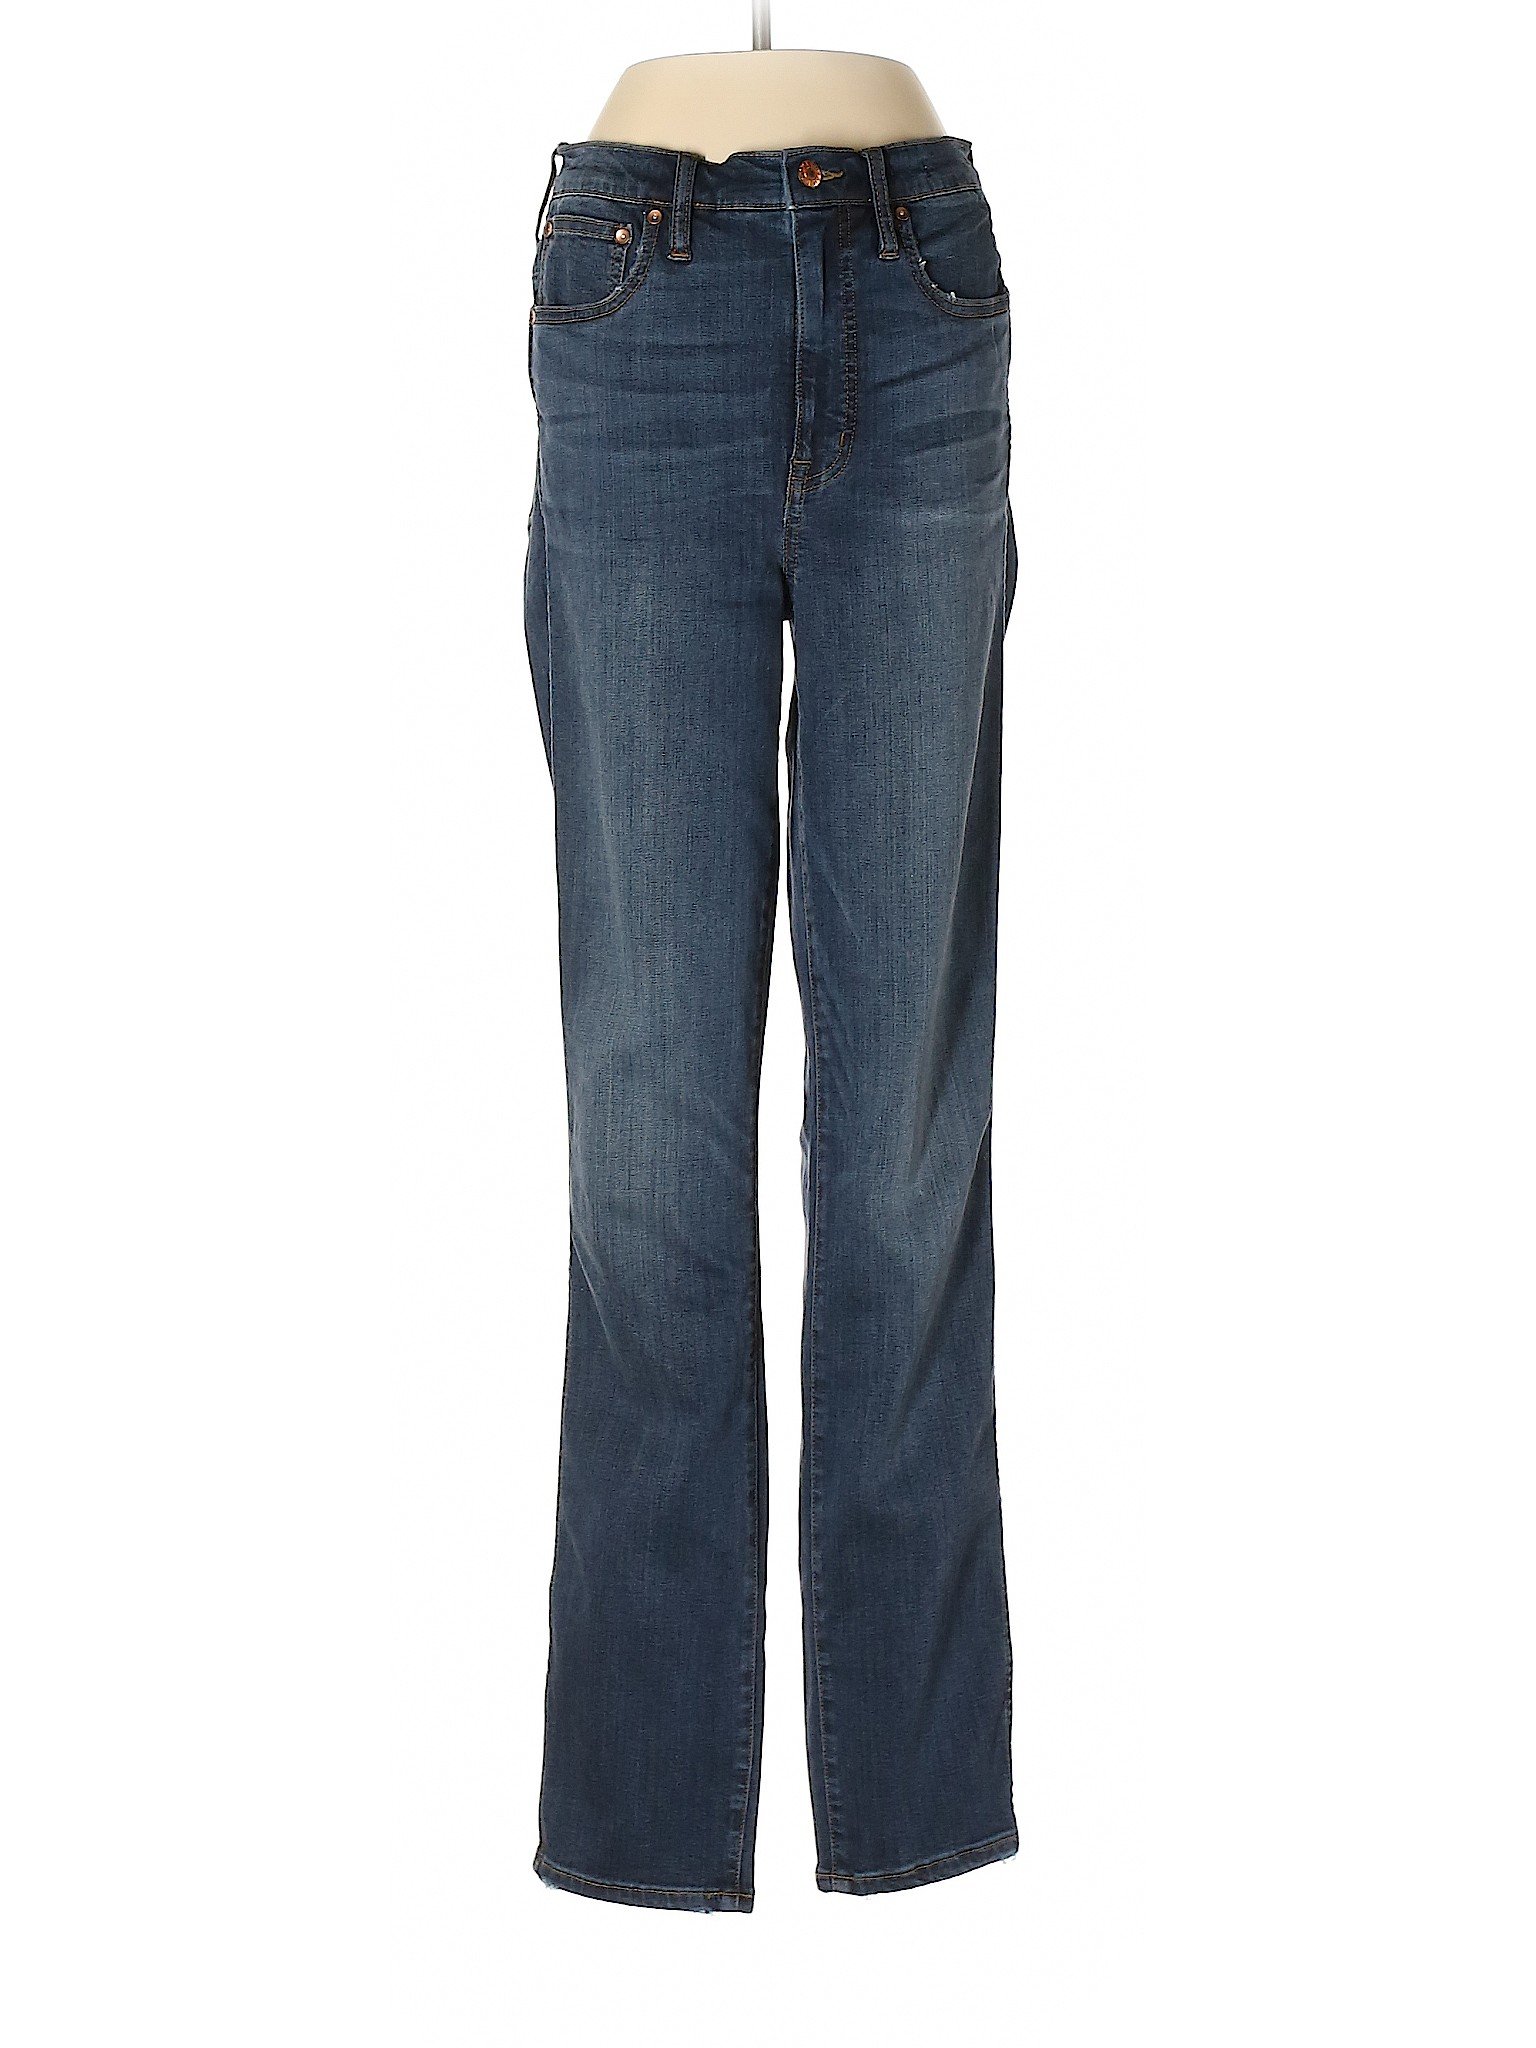 Point Sur Women Blue Jeans 27 W Tall | eBay